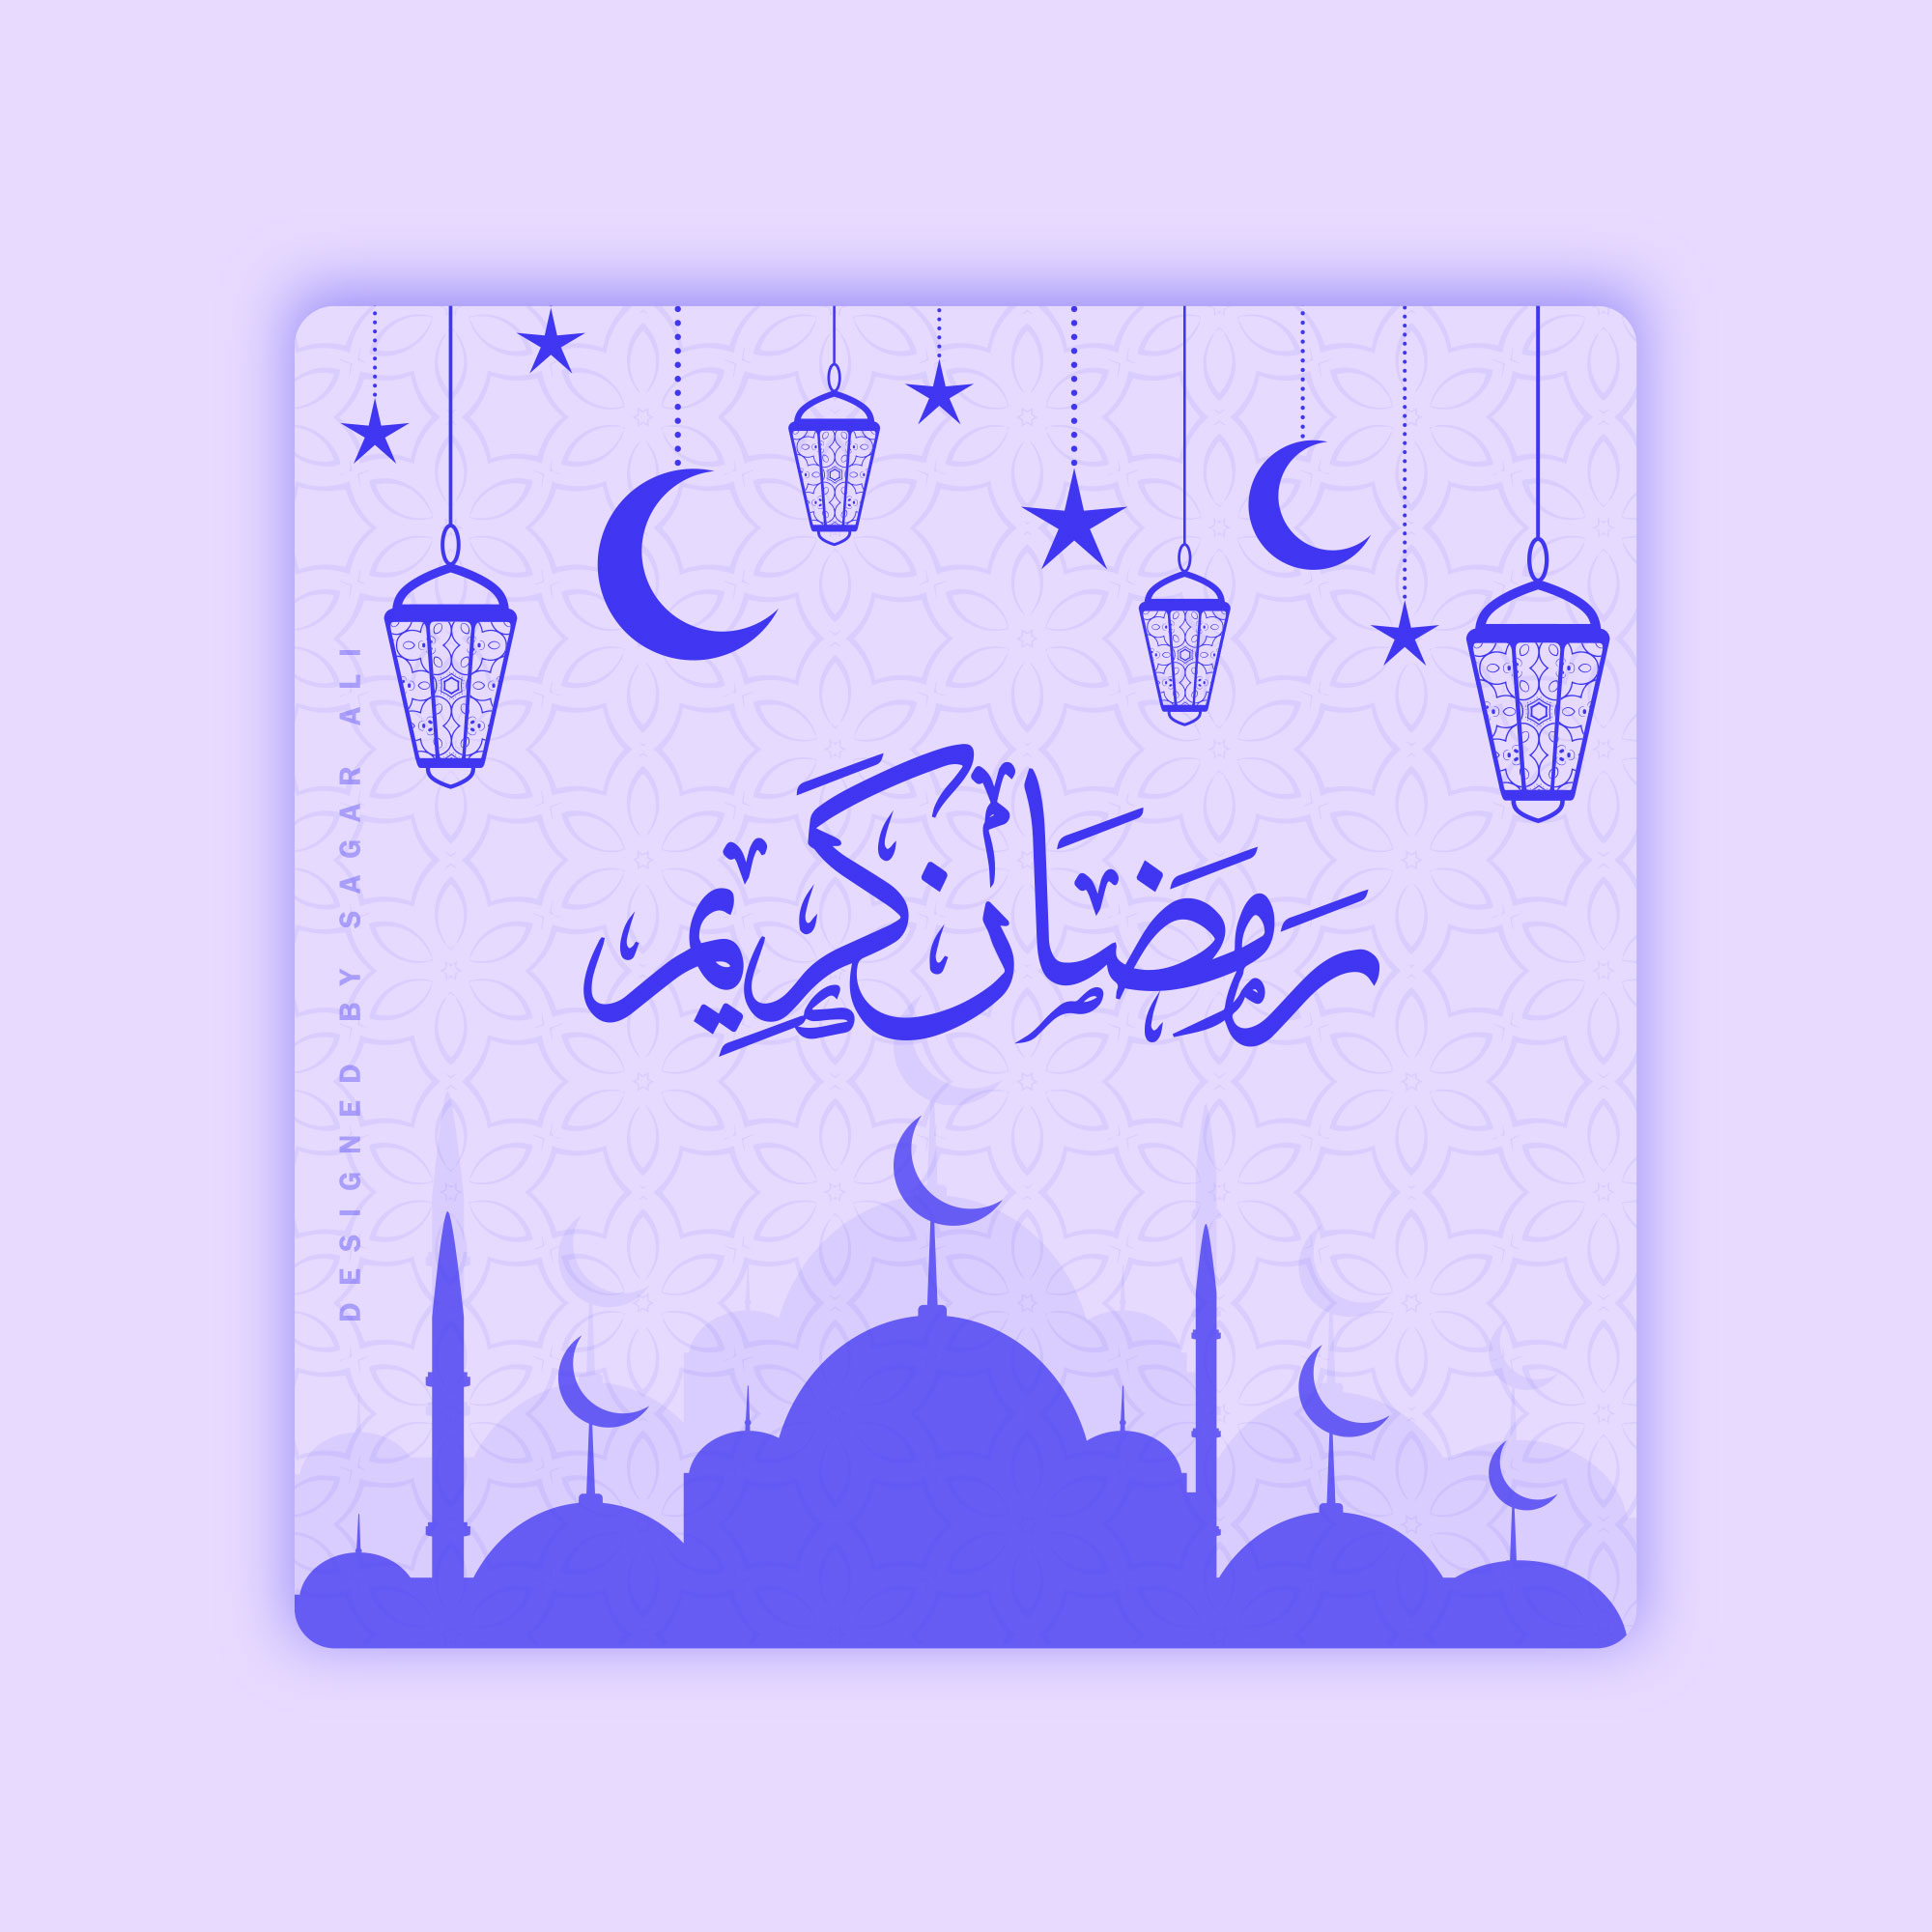 Ramadan Kareem Social media Post design preview image.